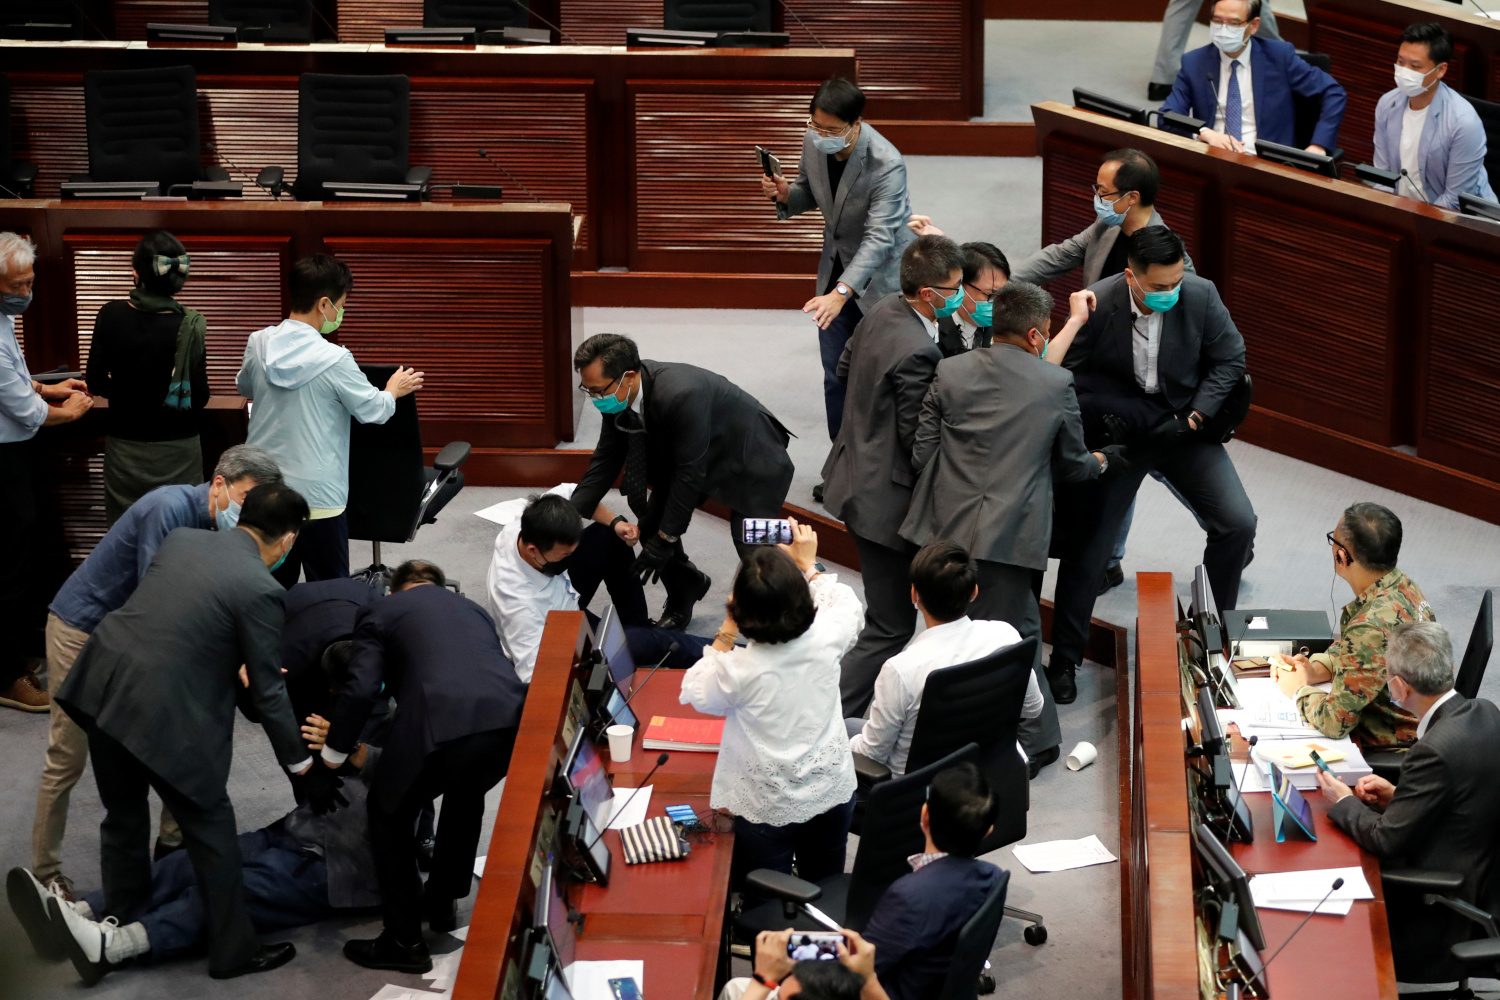 多名民主派議員被保安抬離會議廳，情況混亂，有議員倒地。